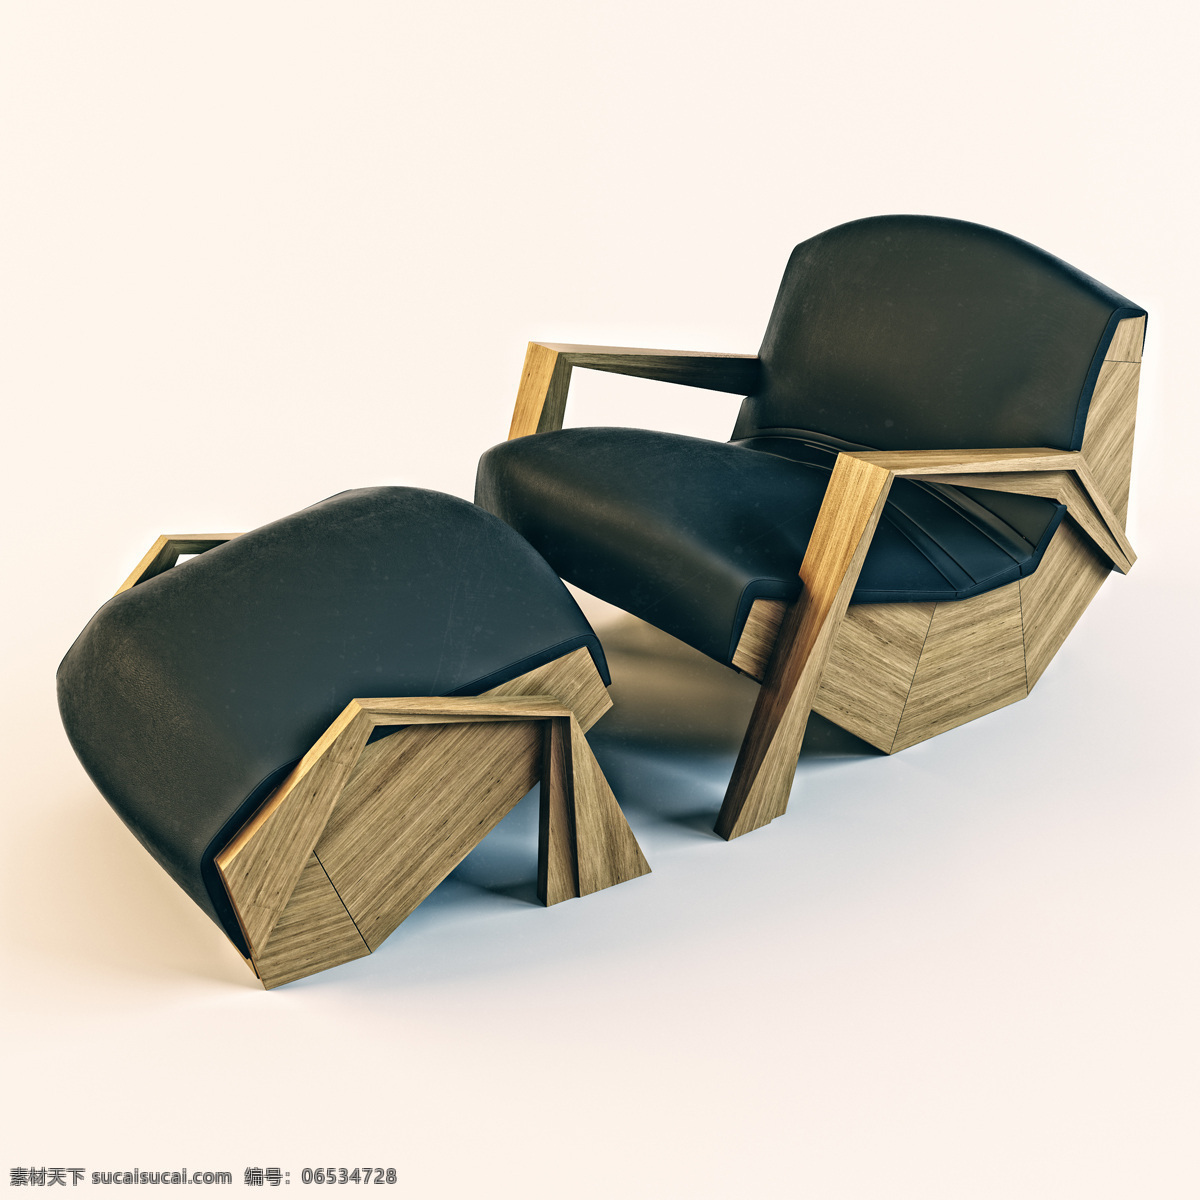 armchair ottoman decor 个性 木质 沙发 躺椅 沙发躺椅 桌椅沙发 沙发椅 max 白色